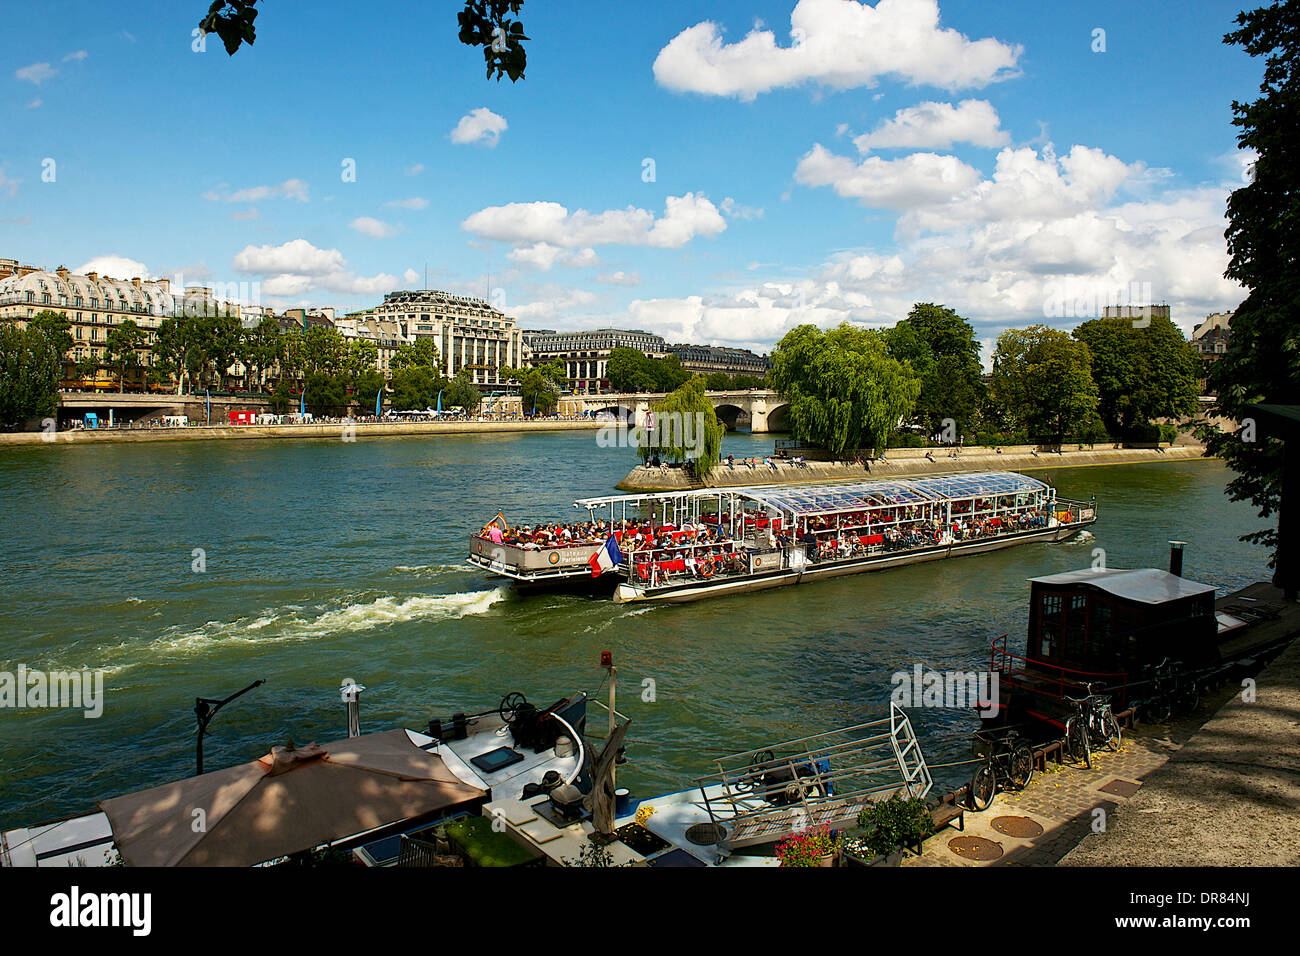 La barca turistica sul fiume Senna, Parigi, Francia Foto Stock